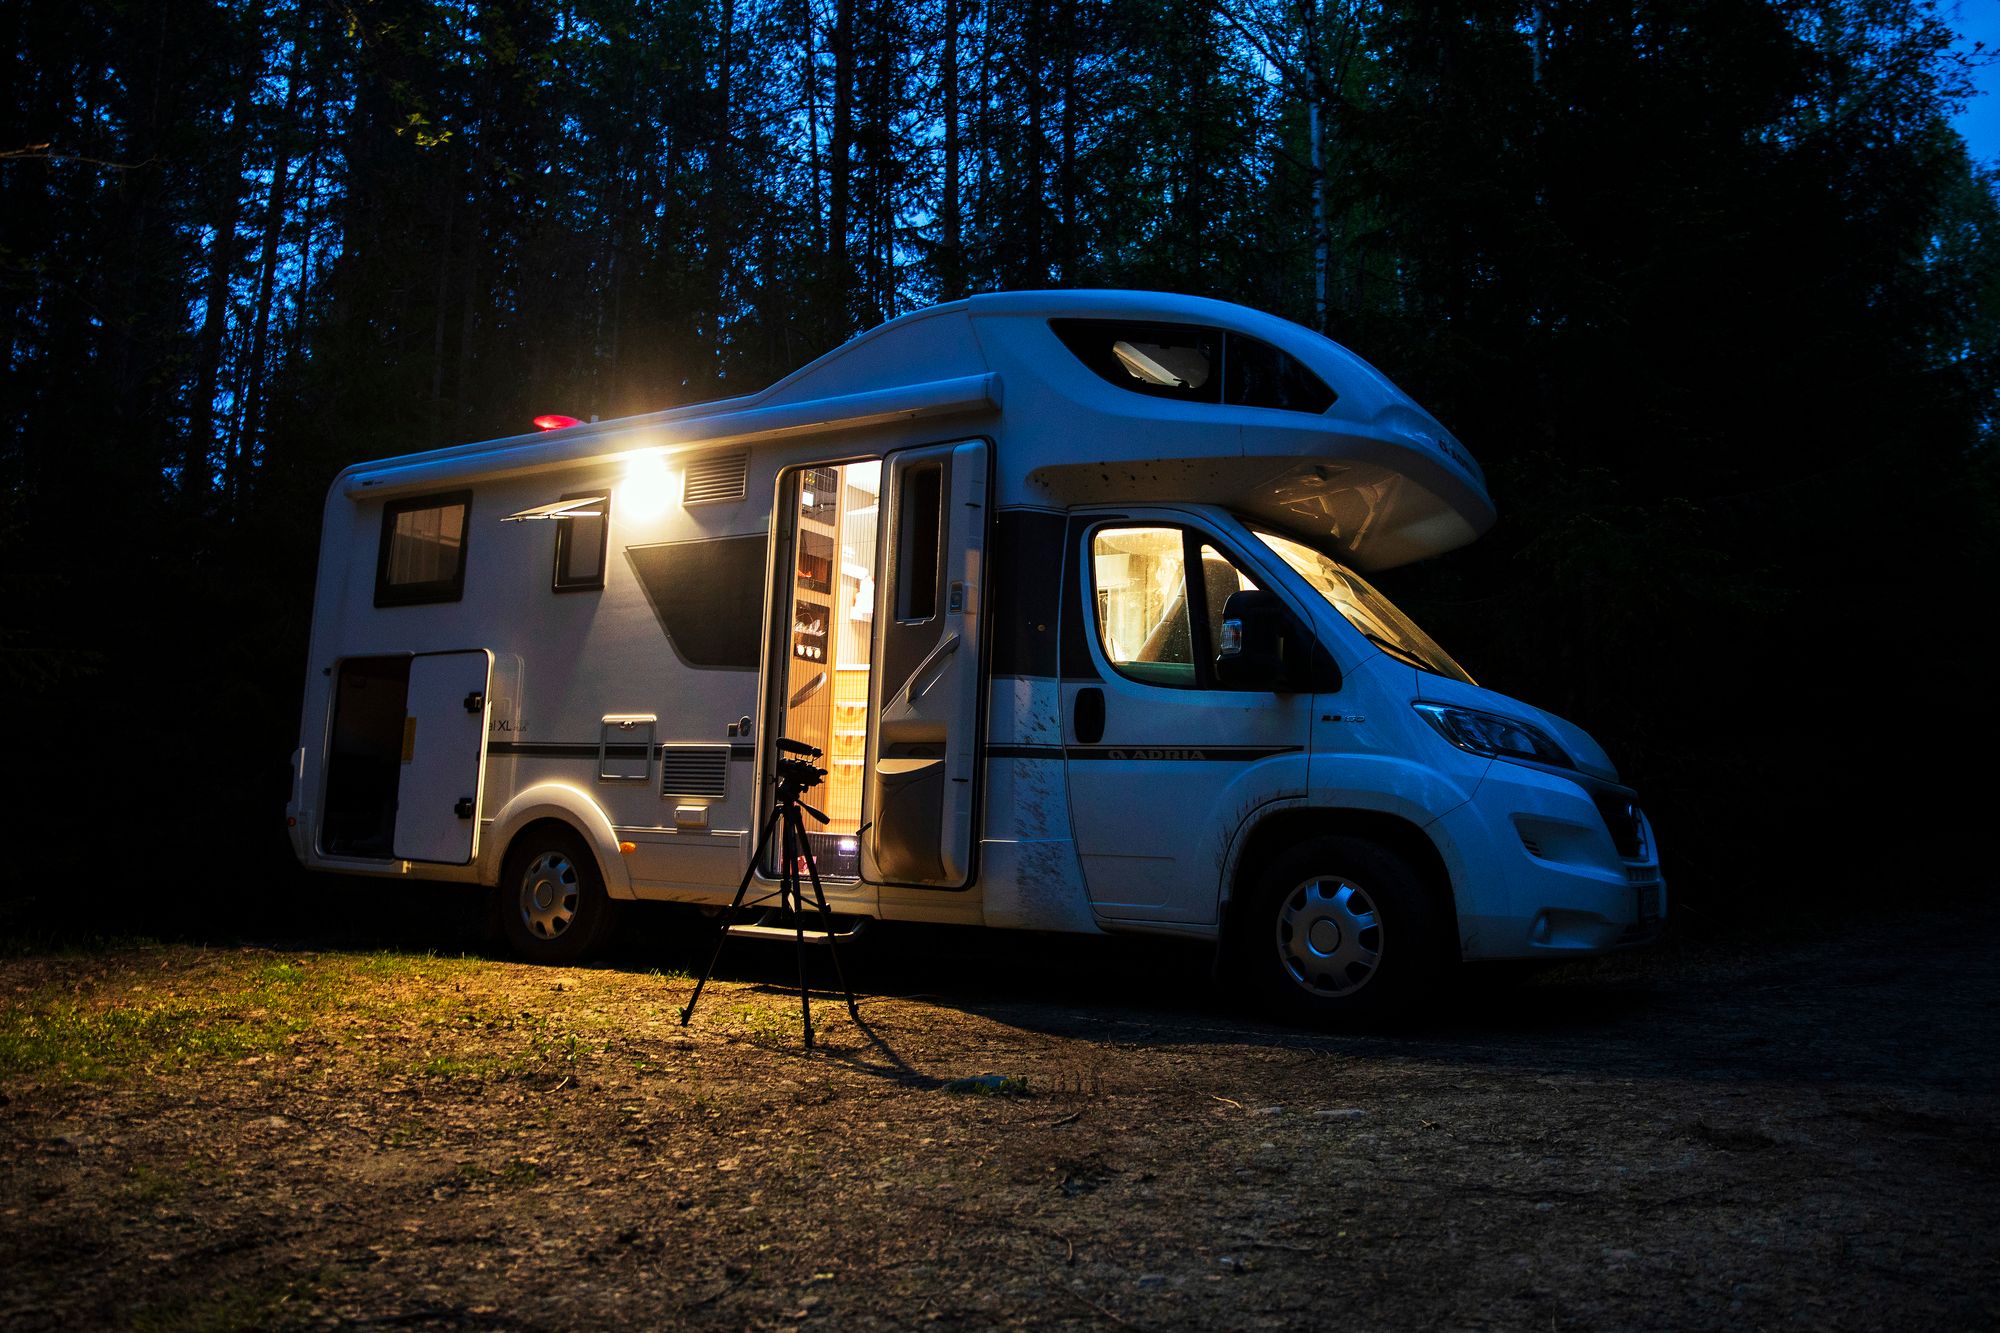 Matkailuauto helpottaa öisiä metsäretkiä, sillä sisällä voi käydä nukkumassa tai hörppimässä kahvia, kun metsä hiljenee. © Tommi Mattila